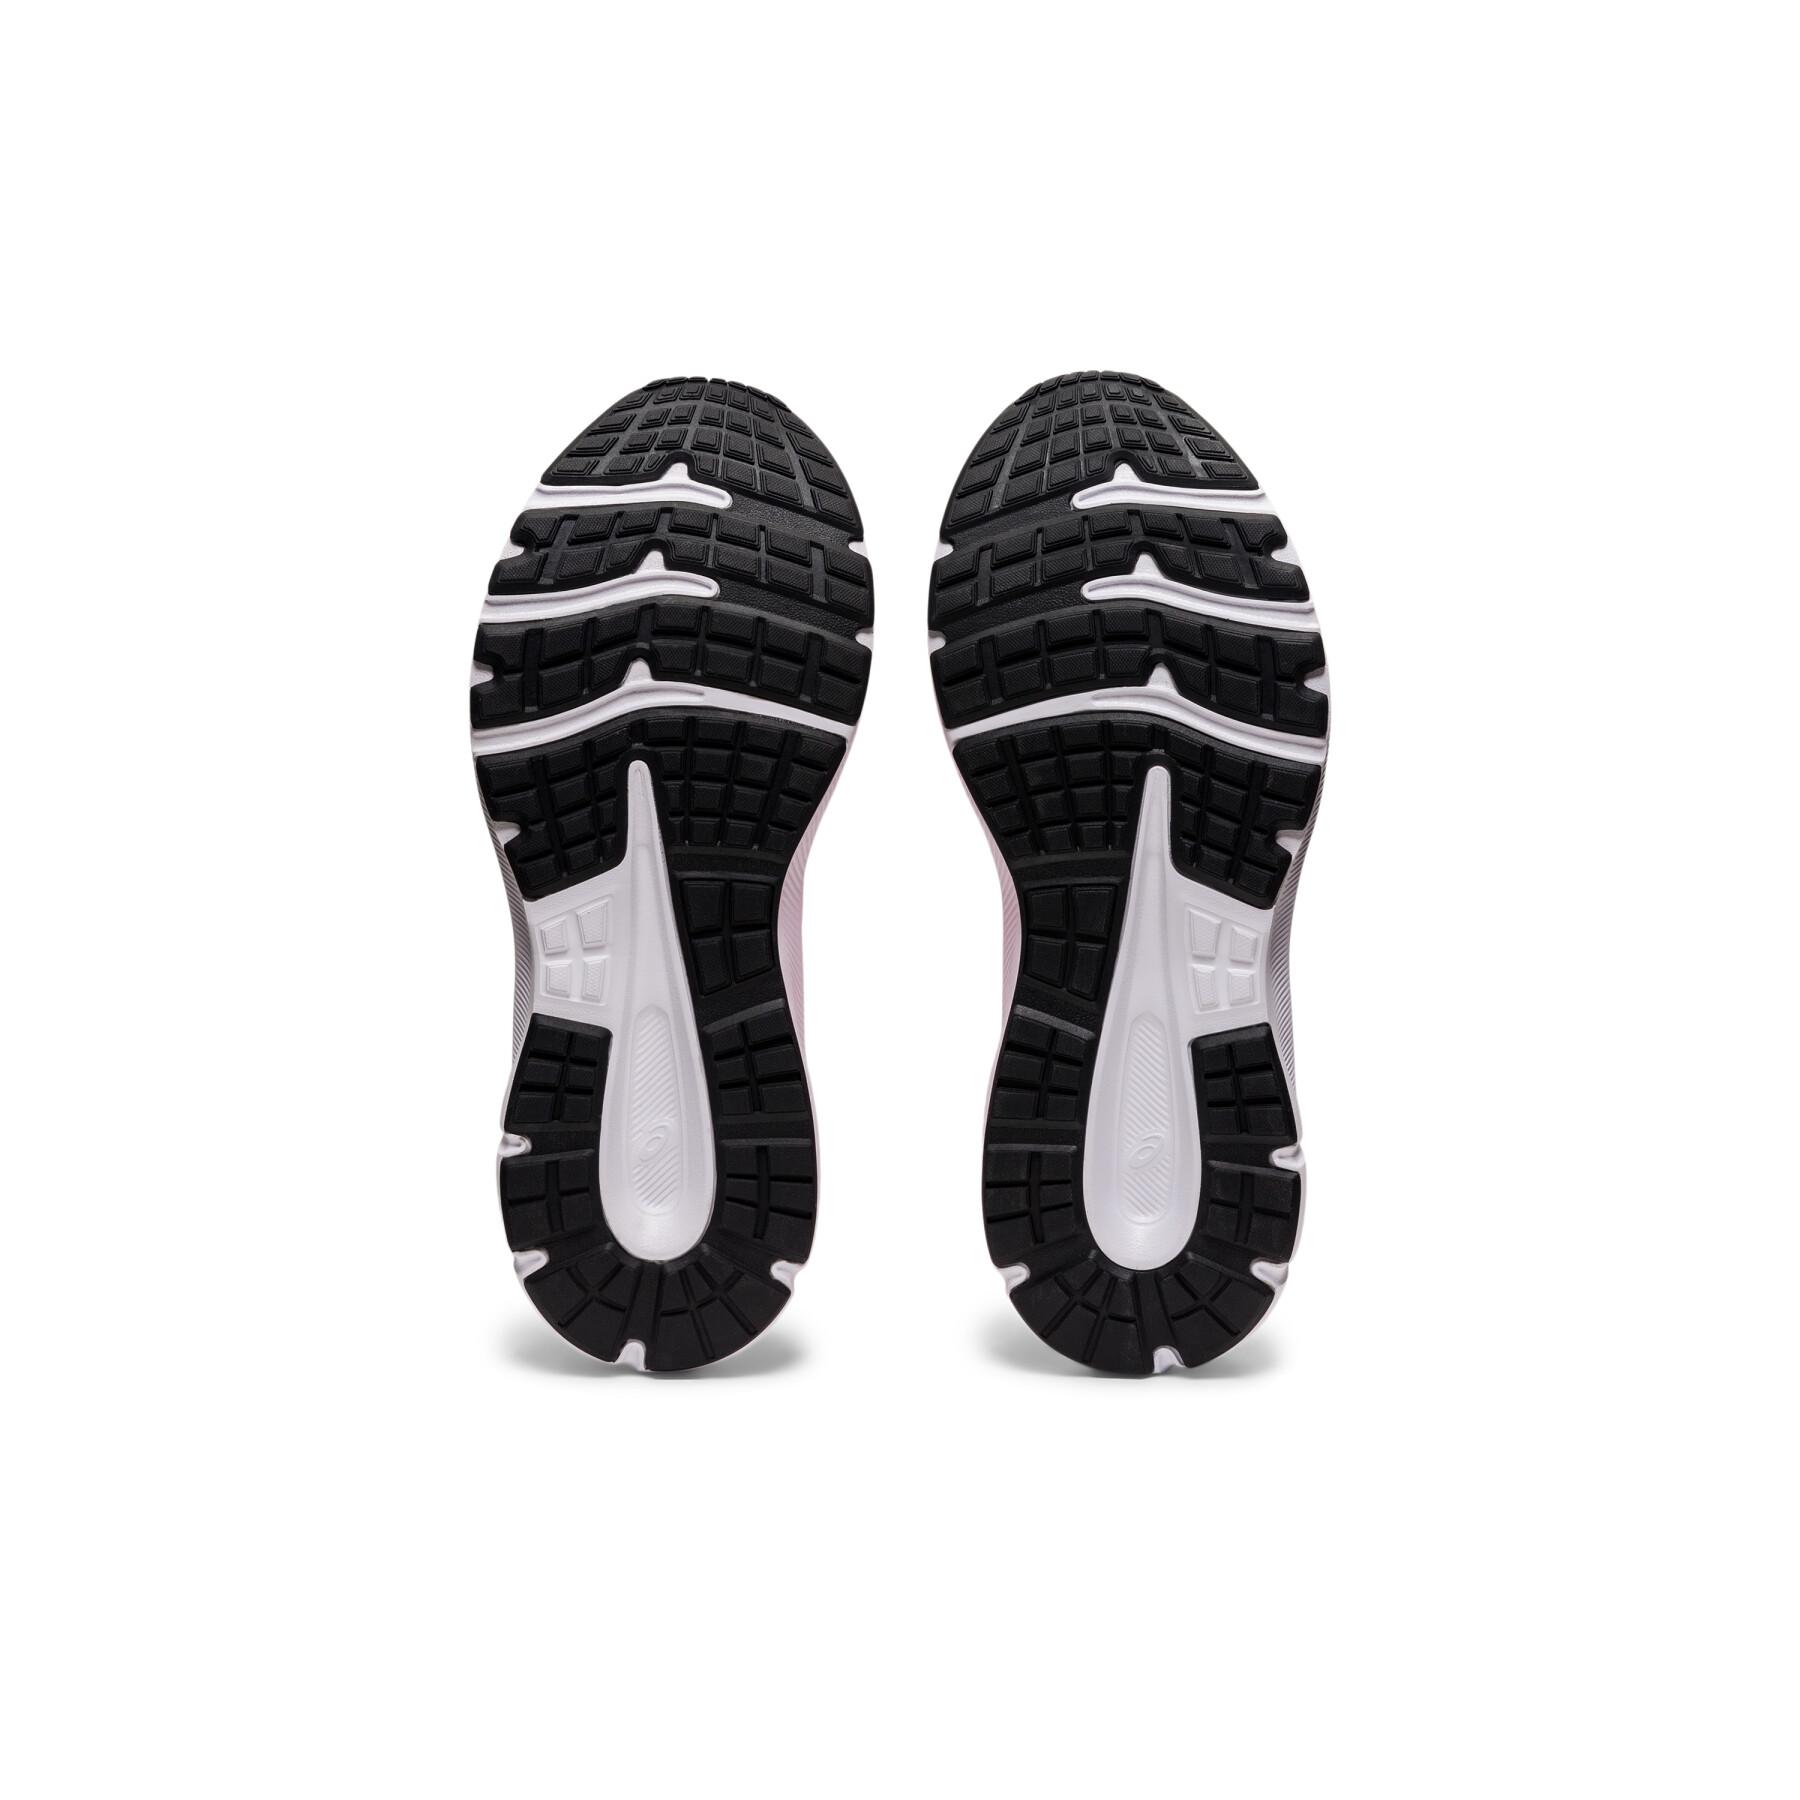 Chaussures de running femme Asics Jolt 3